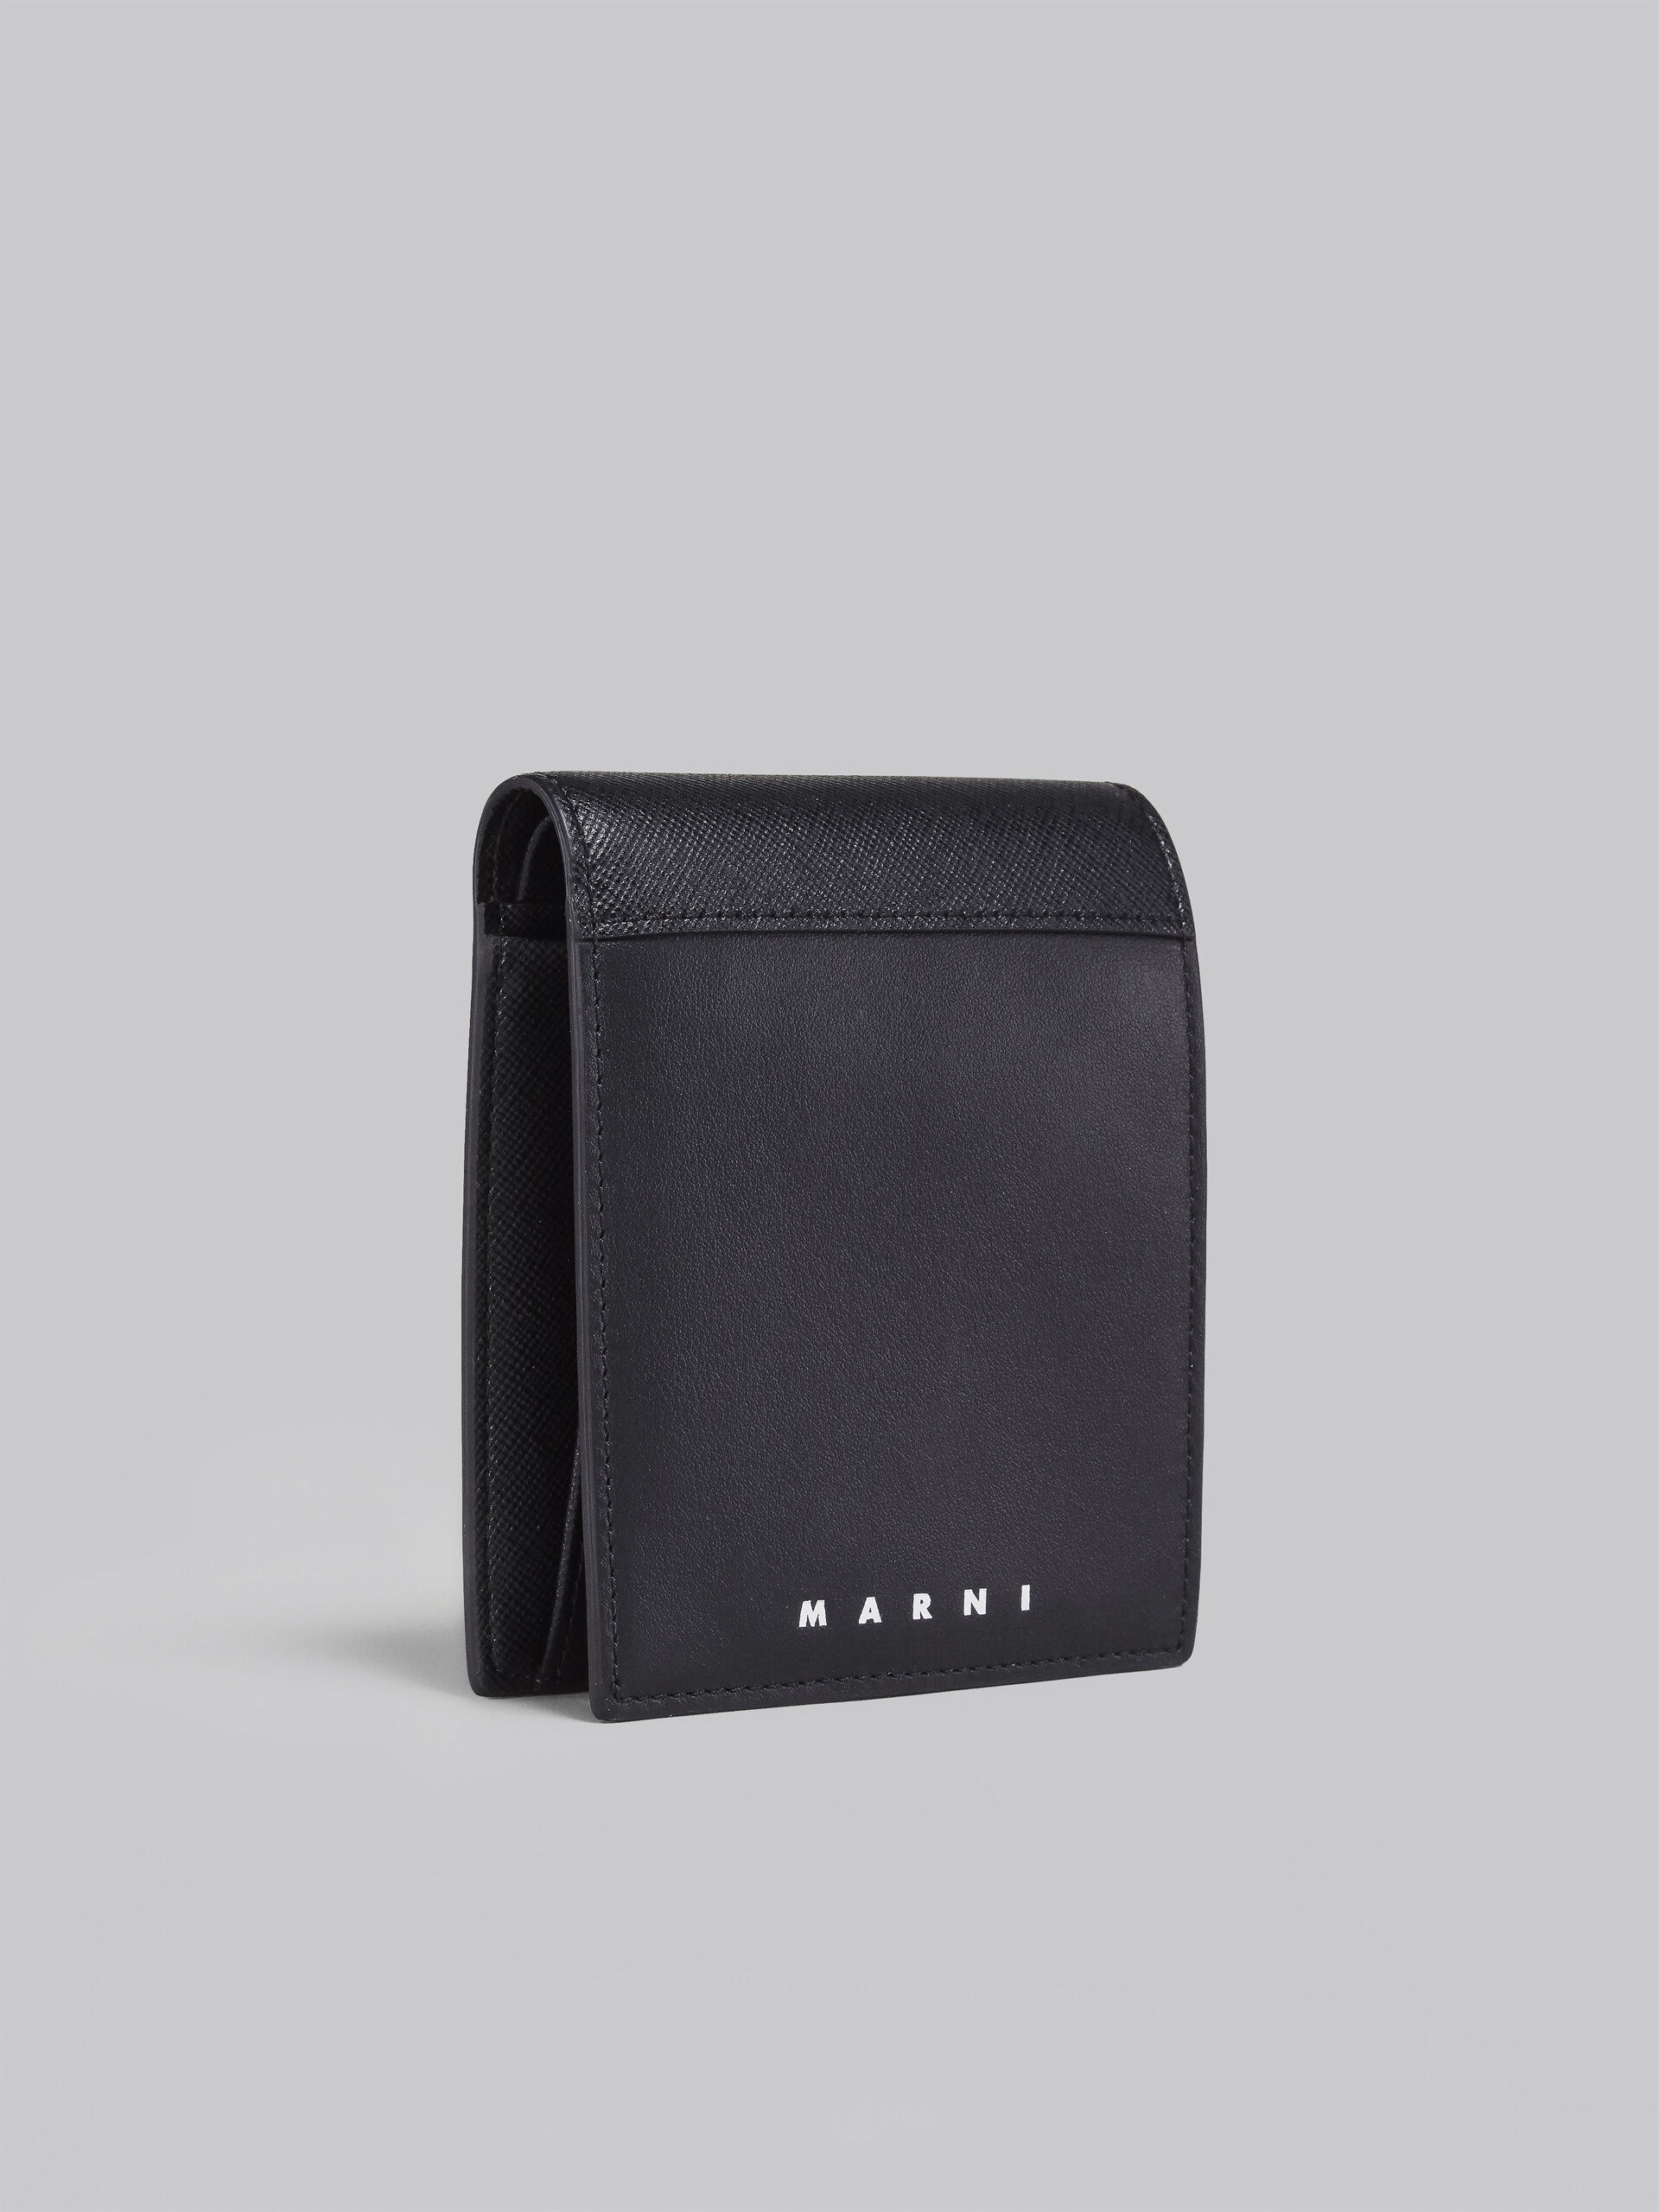 ブラック サフィアーノカーフレザー製 二つ折り財布